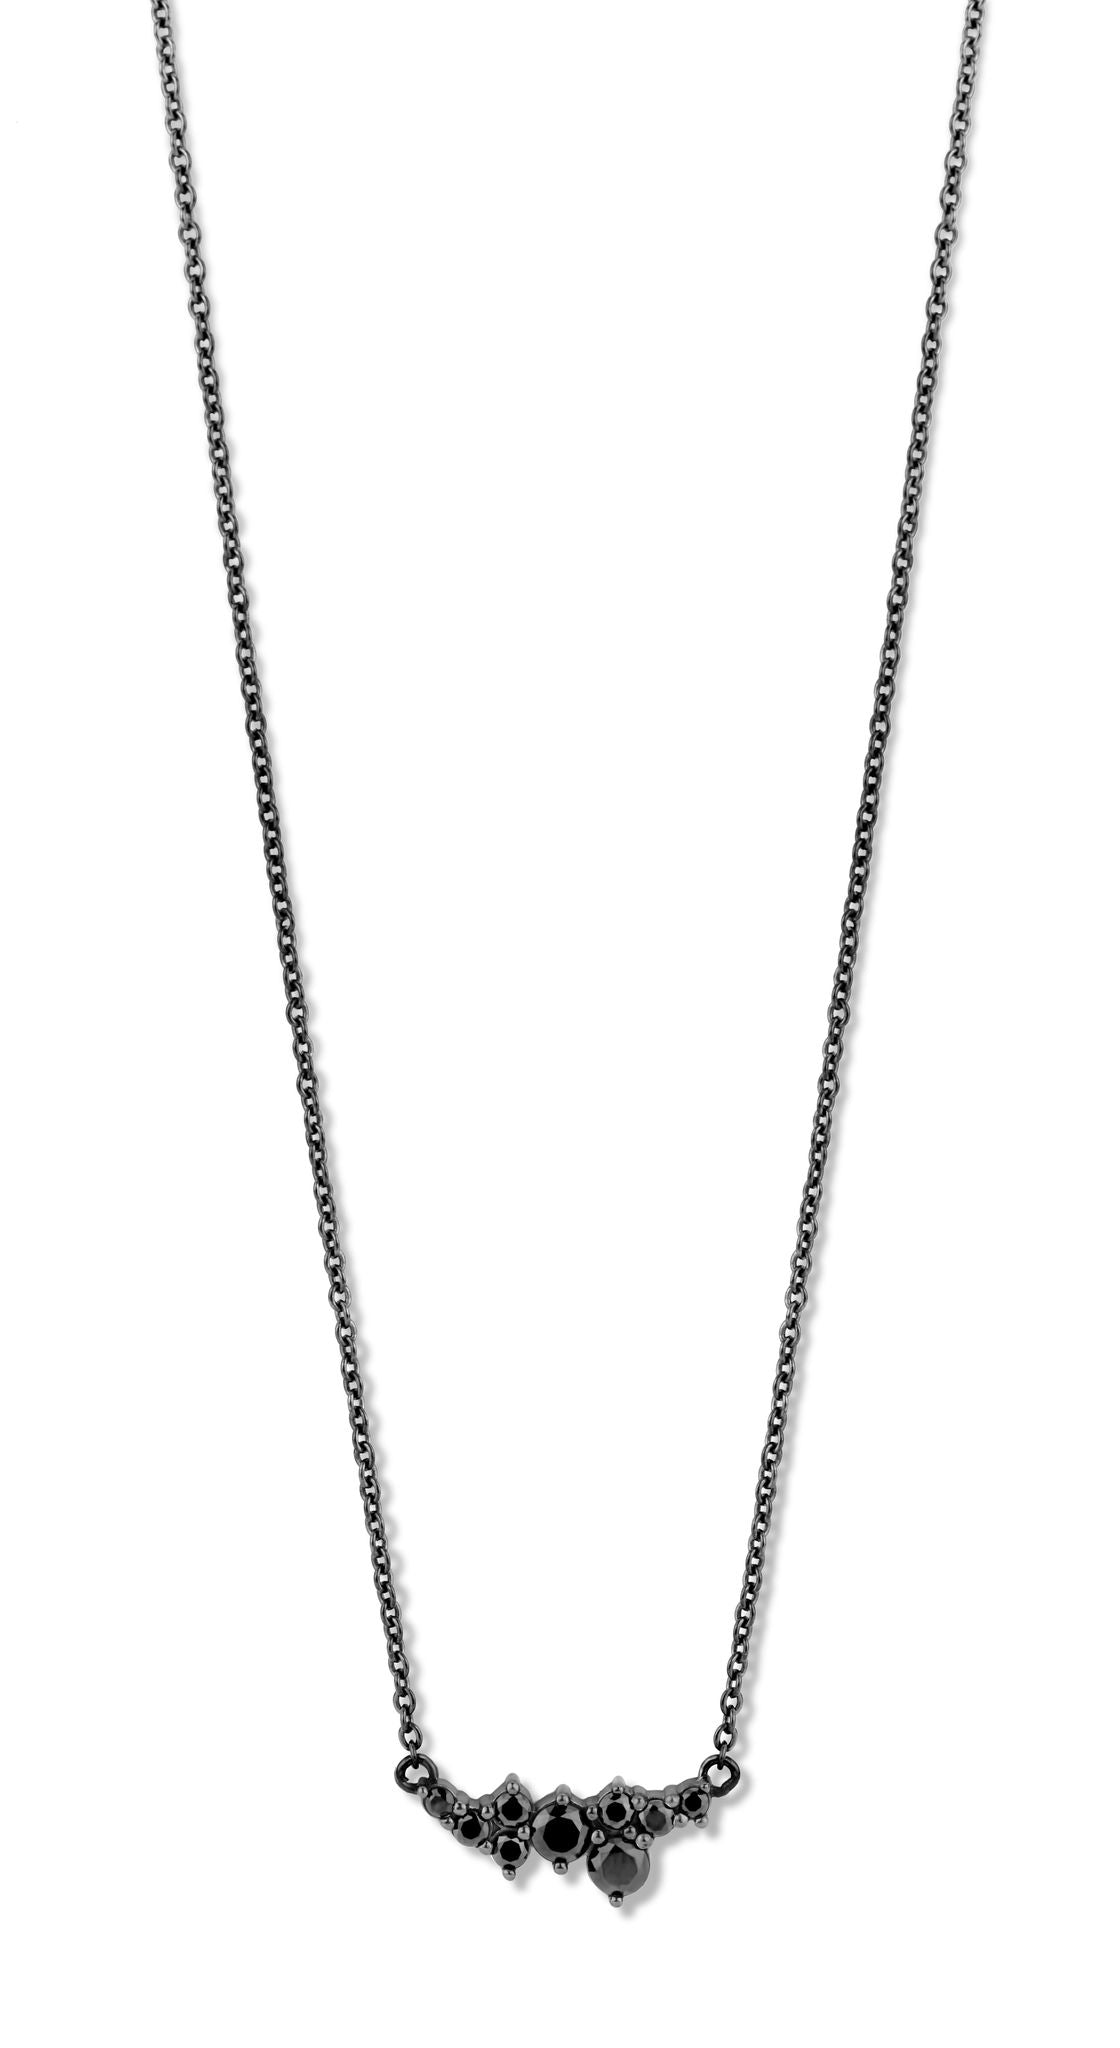 Aria halskæde 42/45 cm - sterlingsølv sort ruthineret - zirkonia-1